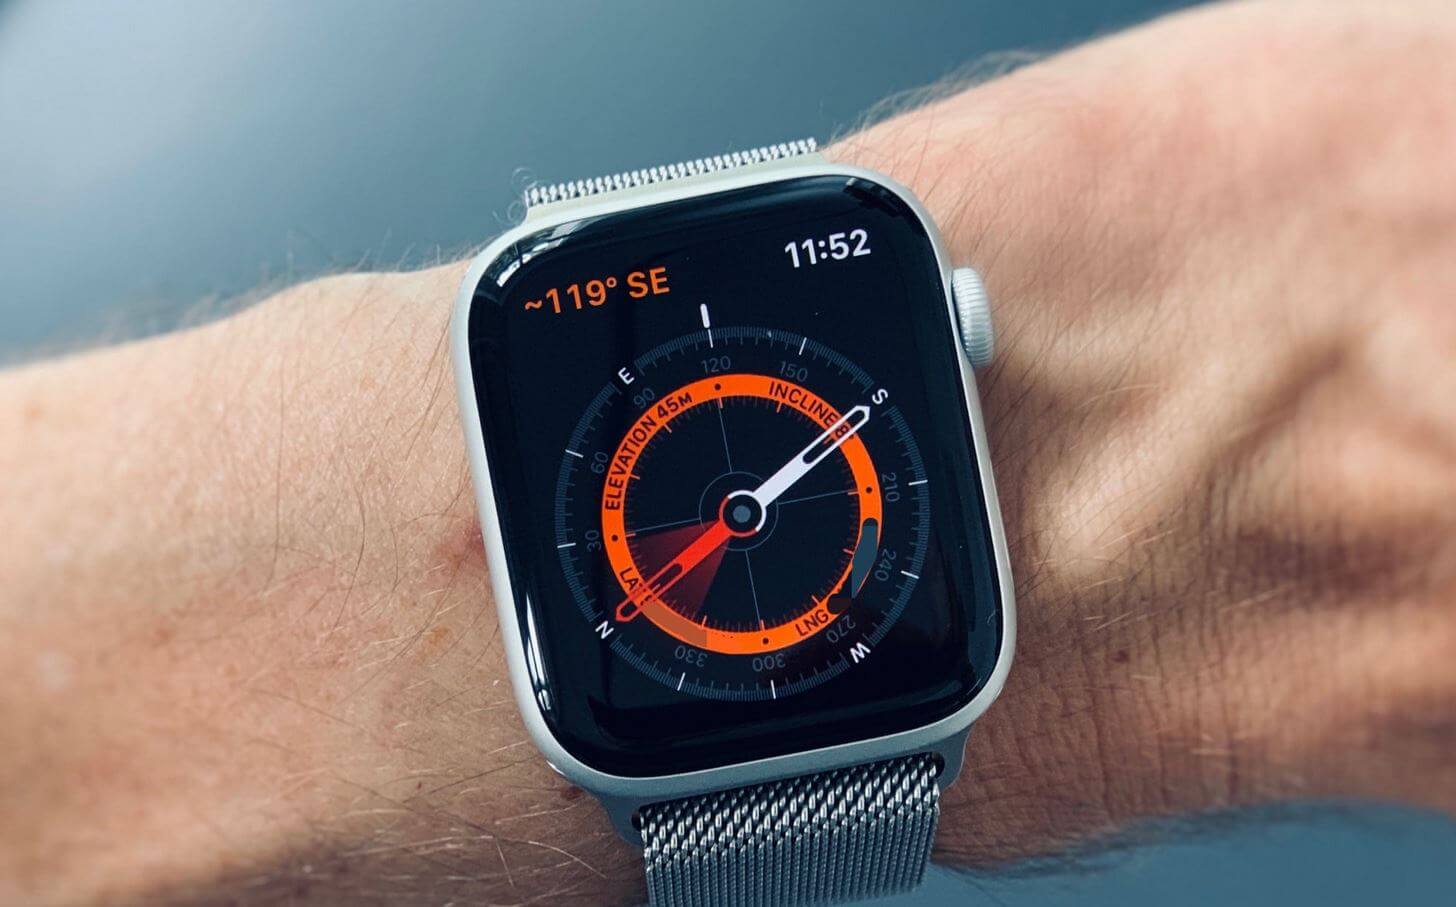 Красный индикатор на Apple Watch — что это значит. Рассказываем, как пользоваться компасом на Apple Watch. Фото.